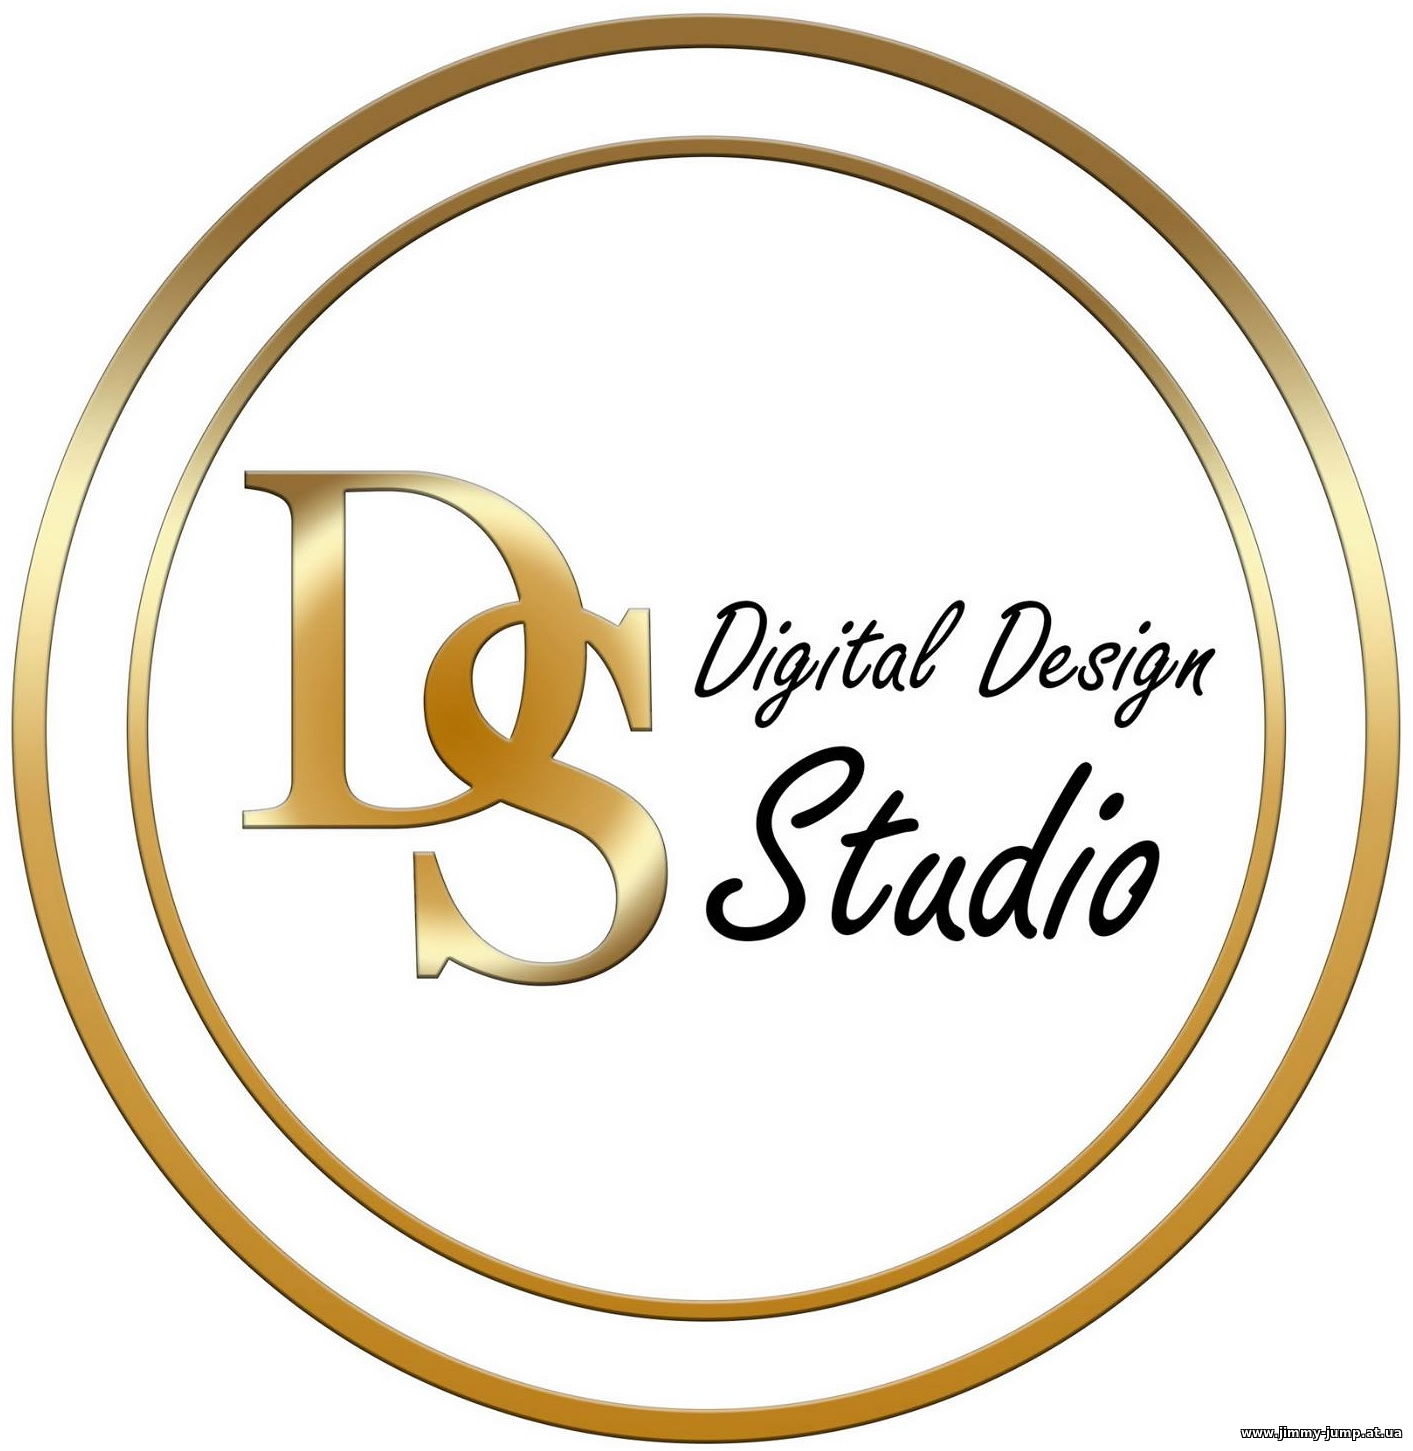 Студия дизайна, создание логотипа, визуализация объектов, брендирование, ваш фирменный стиль, макет для печати